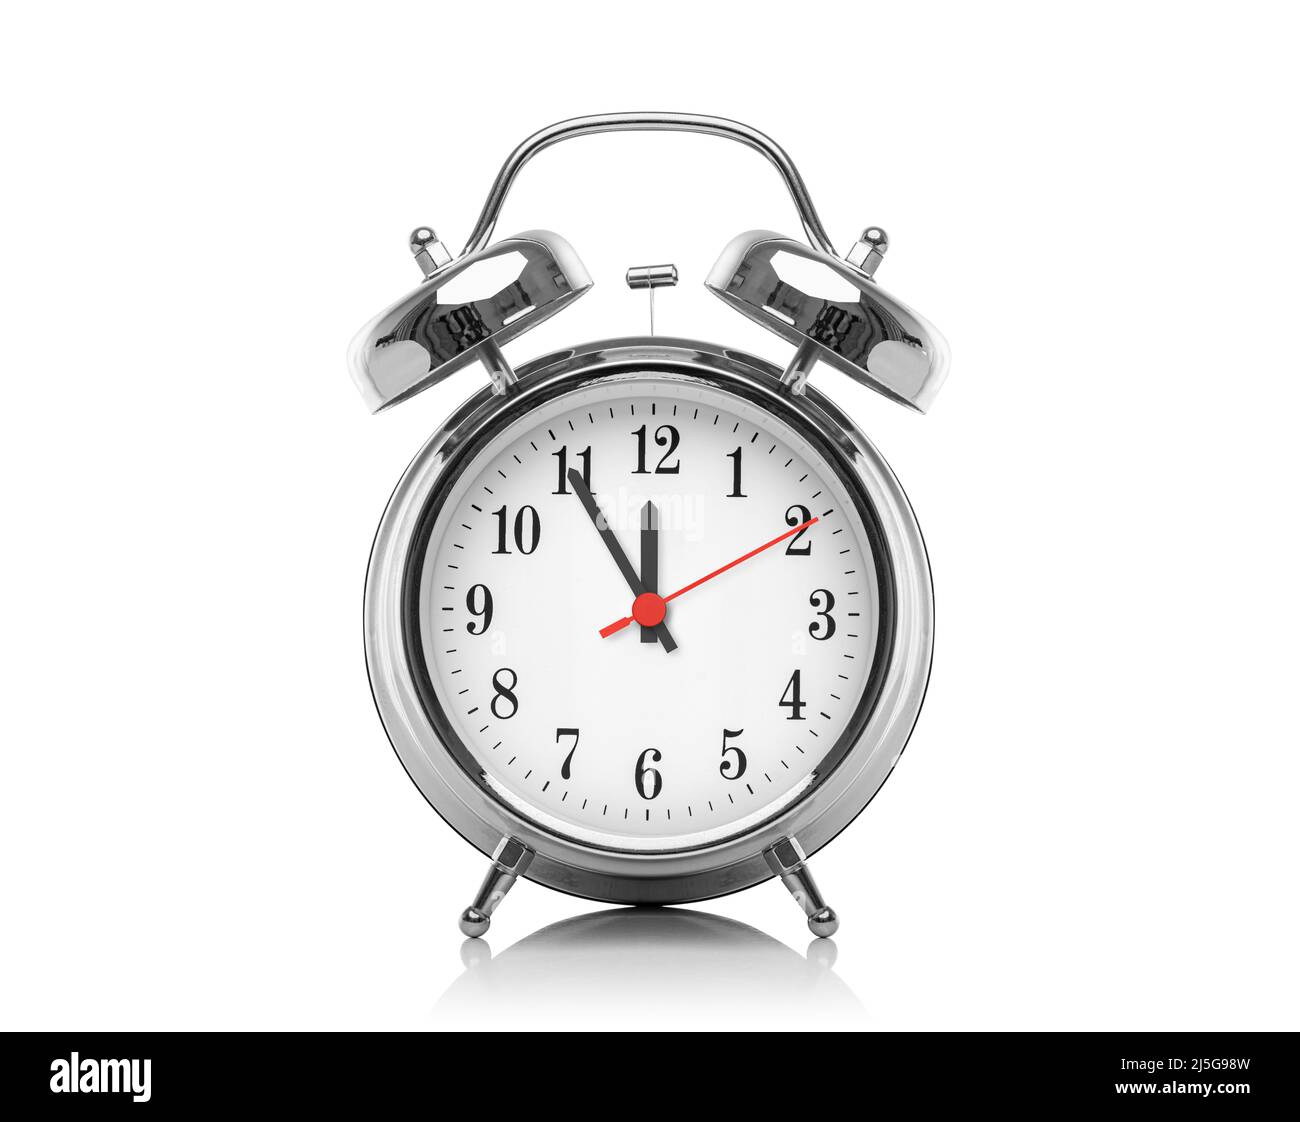 Alarm clock isolated on white background Stock Photo - Alamy